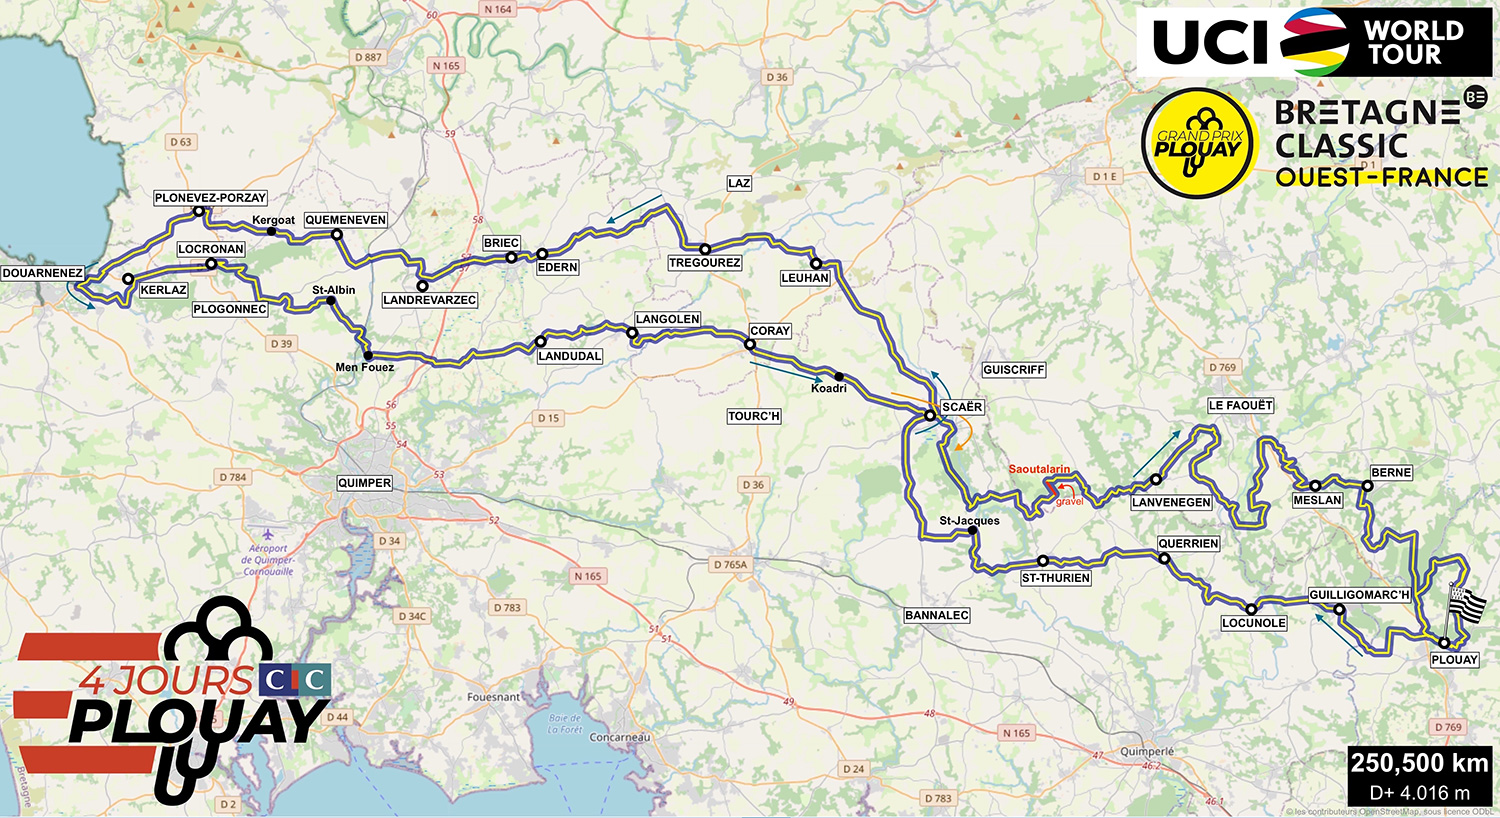 ブルターニュクラシック・ウエストフランス2021 コースマップ